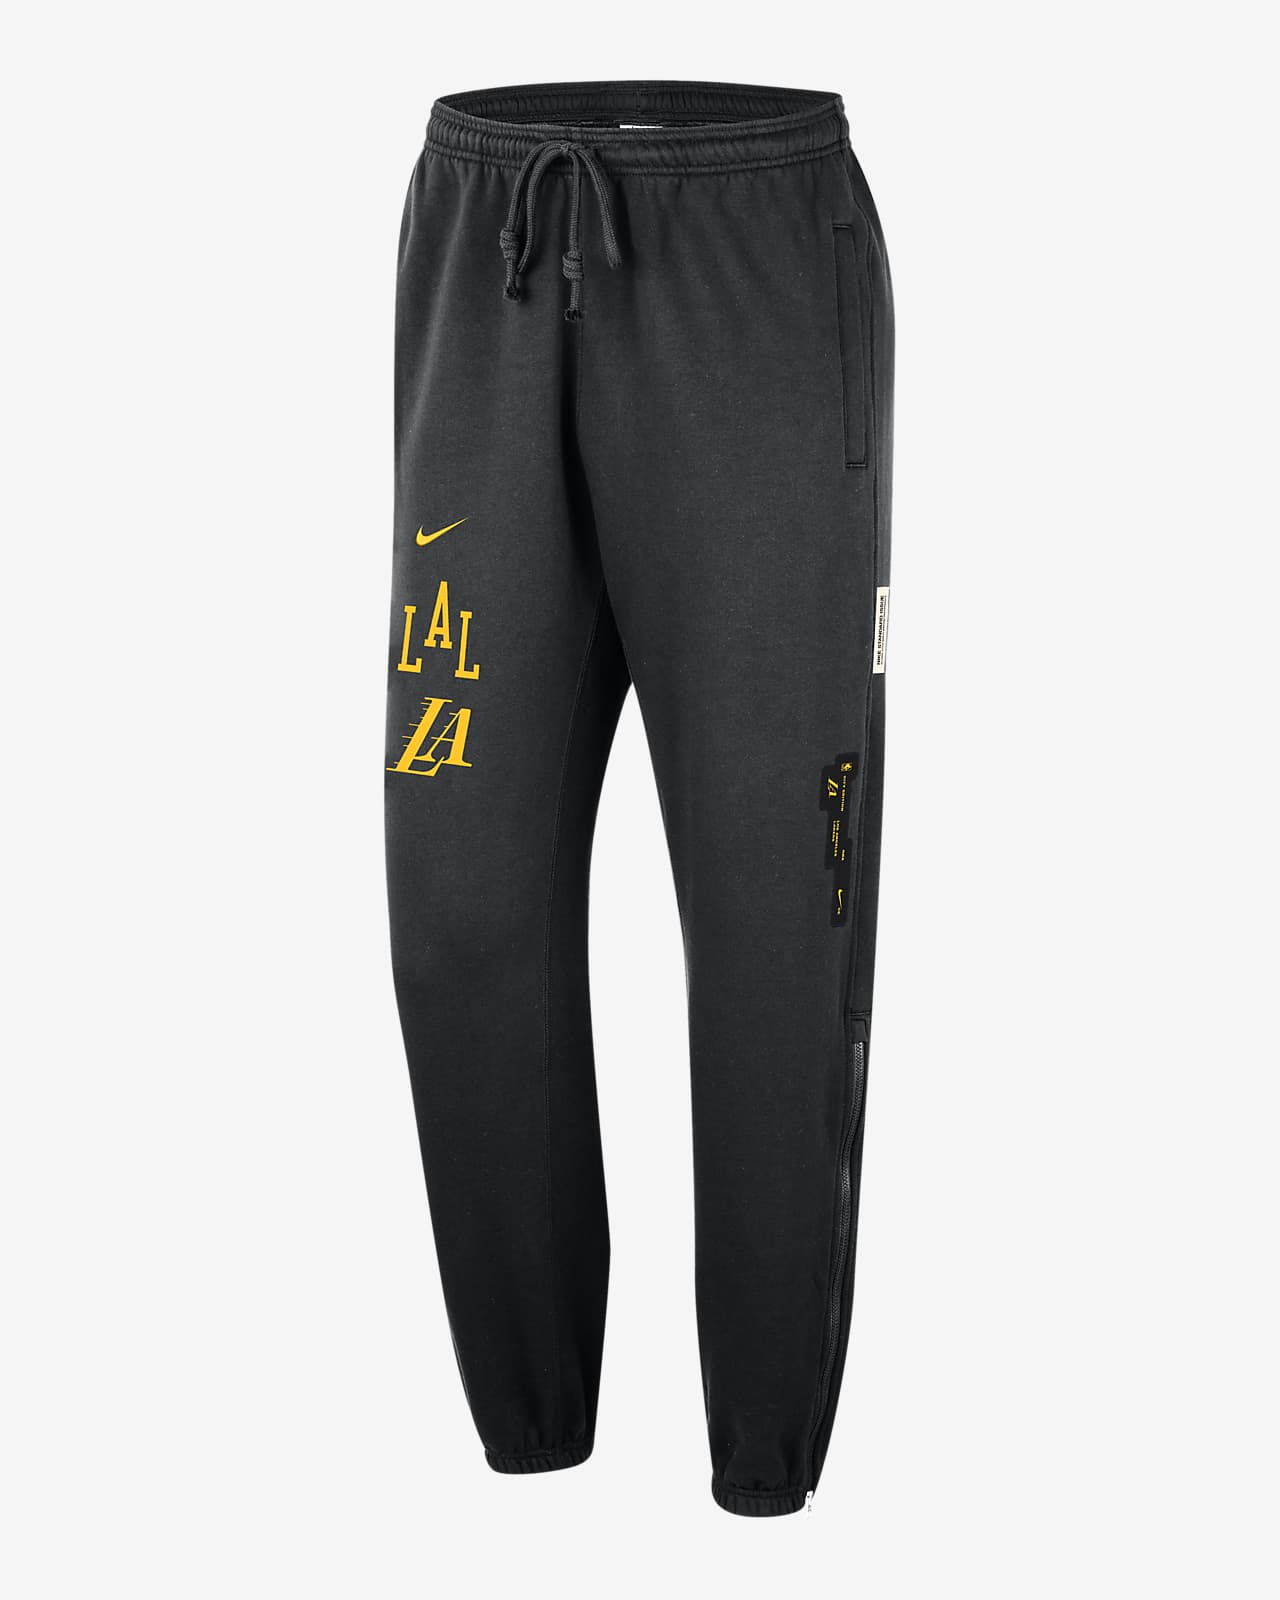 NBA Pants, NBA Pants